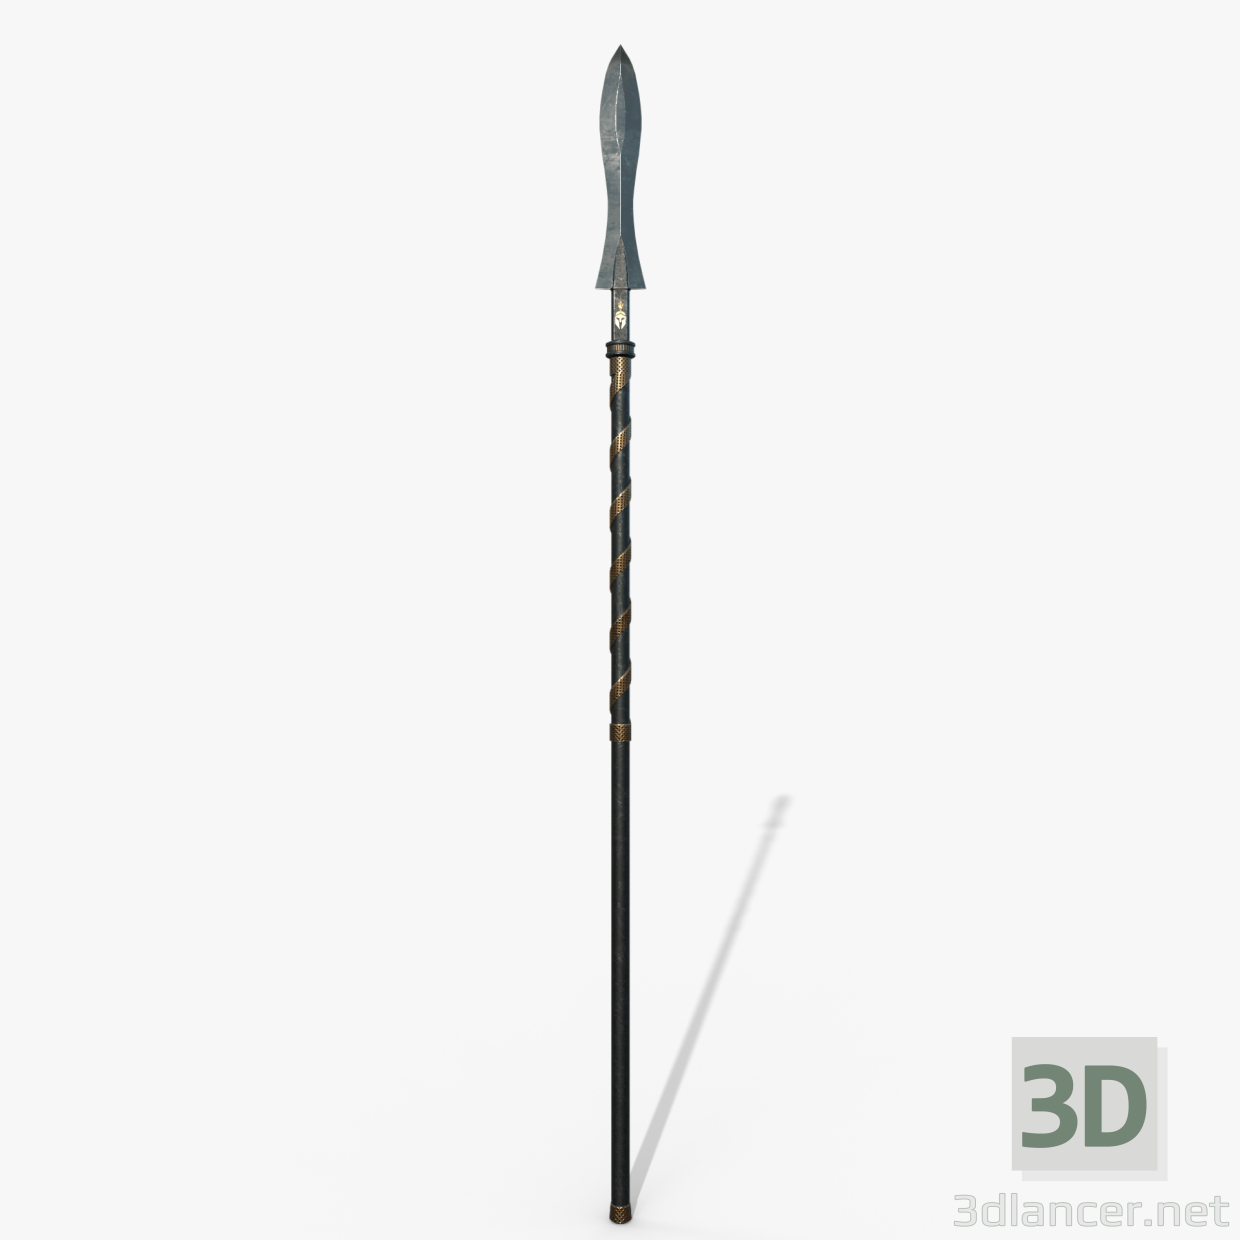 3D Spartalı mızrak modeli satın - render